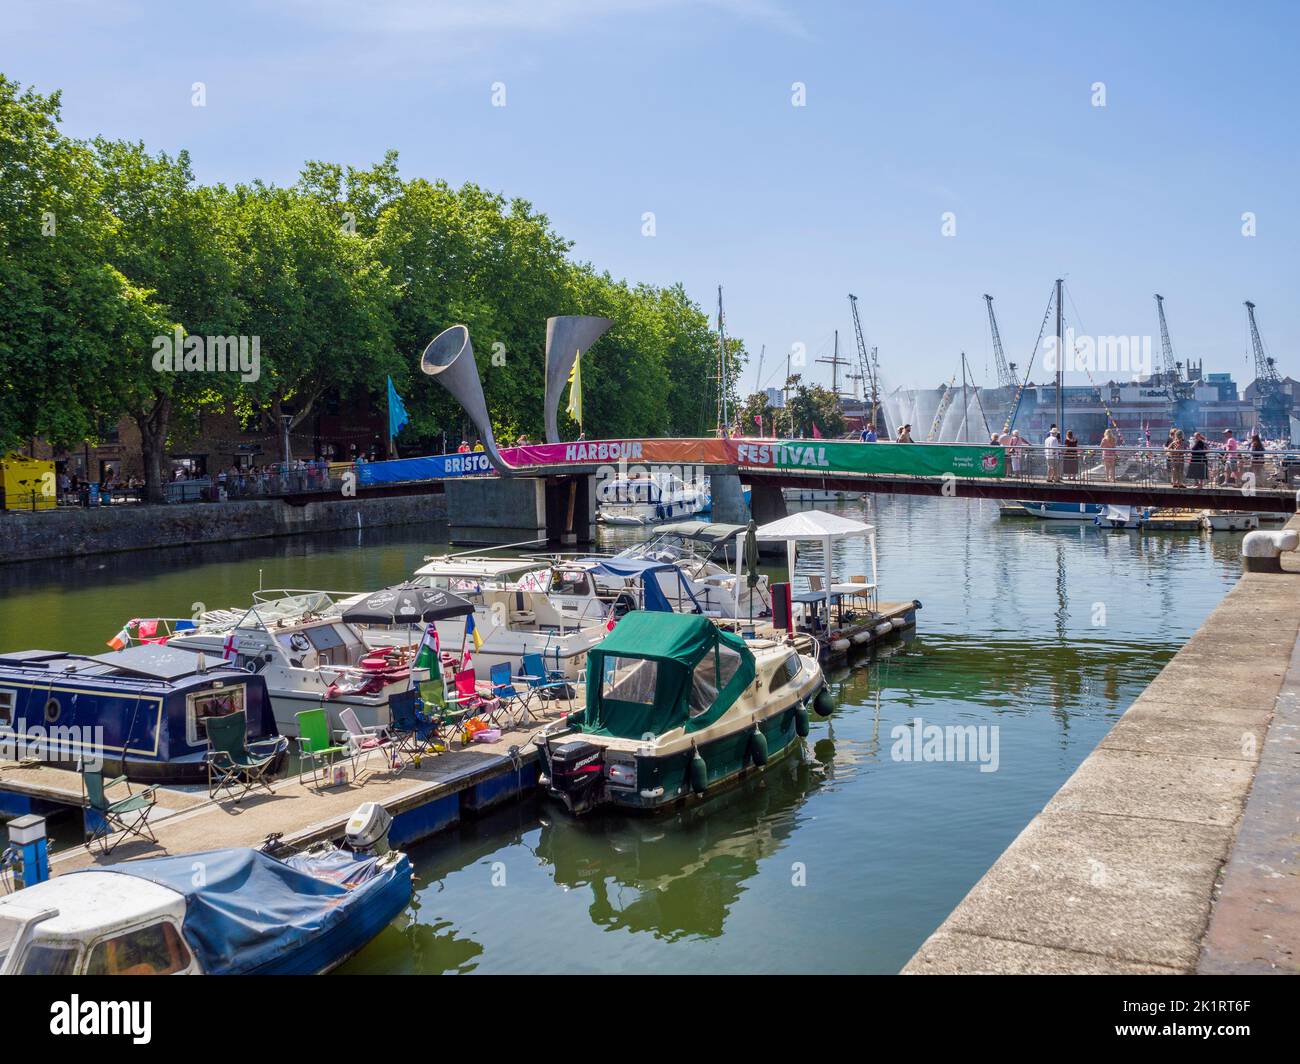 Bateaux de plaisance dans le port flottant de St Augustine à la portée du Bristol Harbour Festival à l'été 2022, Angleterre, Royaume-Uni. Banque D'Images